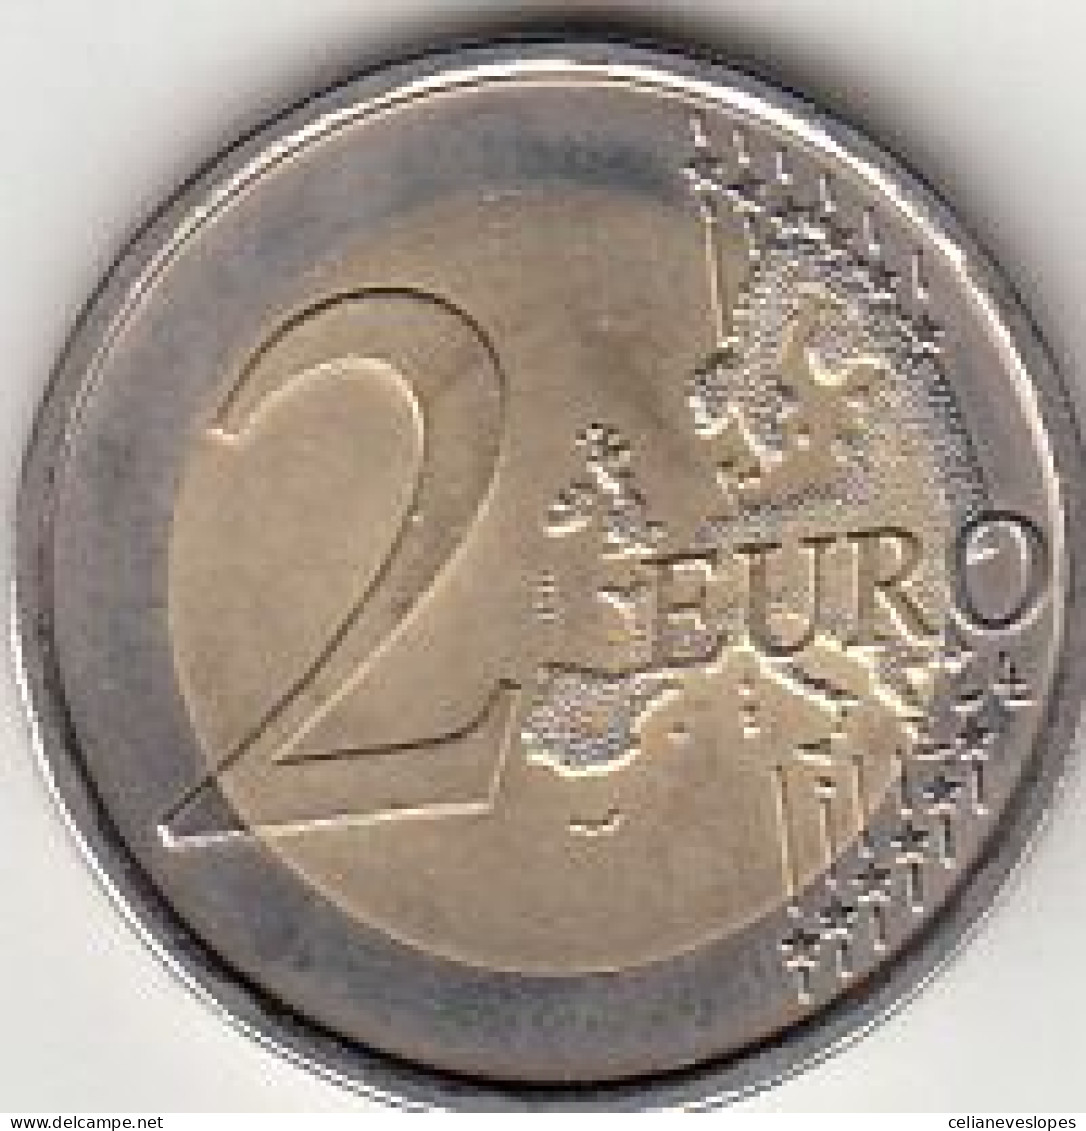 Moeda De Portugal, (06), 2 Euro Dos Segundos Jogos Da Lusofonia De 2009, UNC - Portogallo